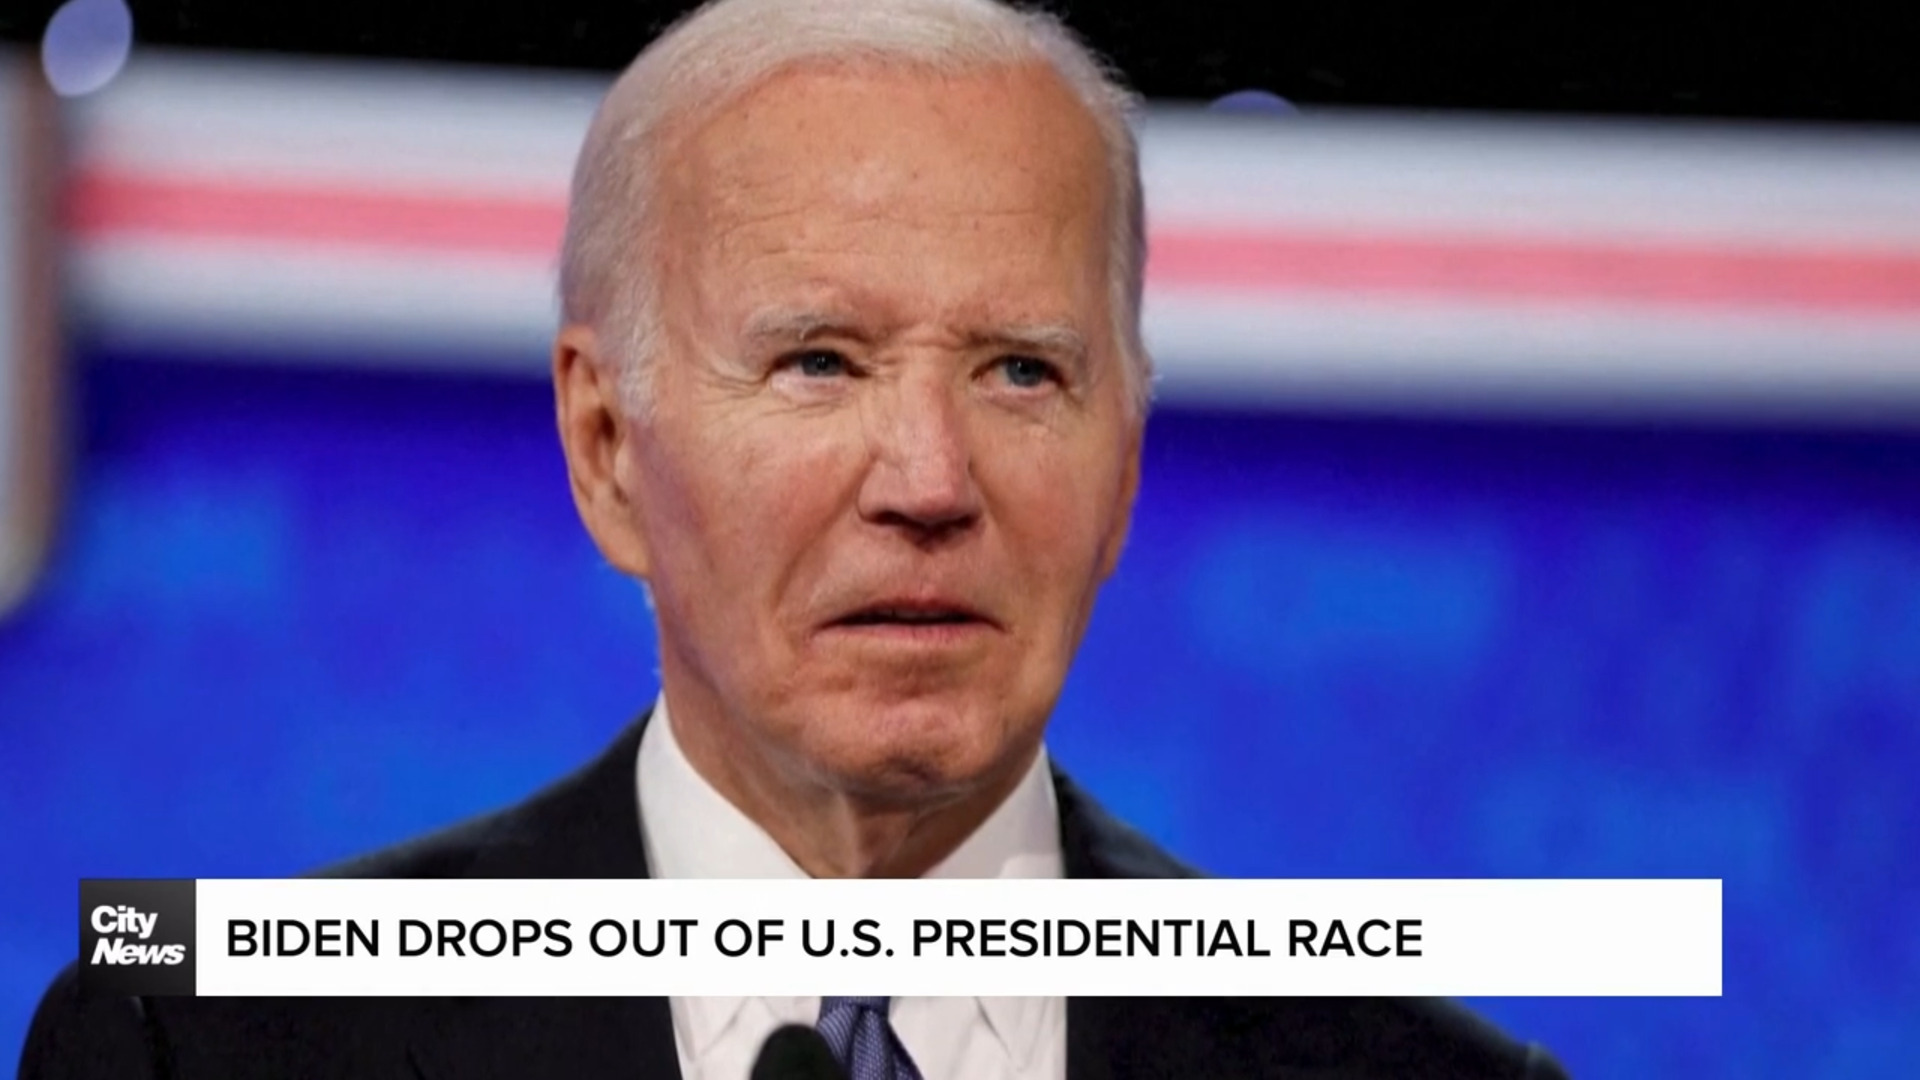 Joe Biden drops out of U.S. Presidential race